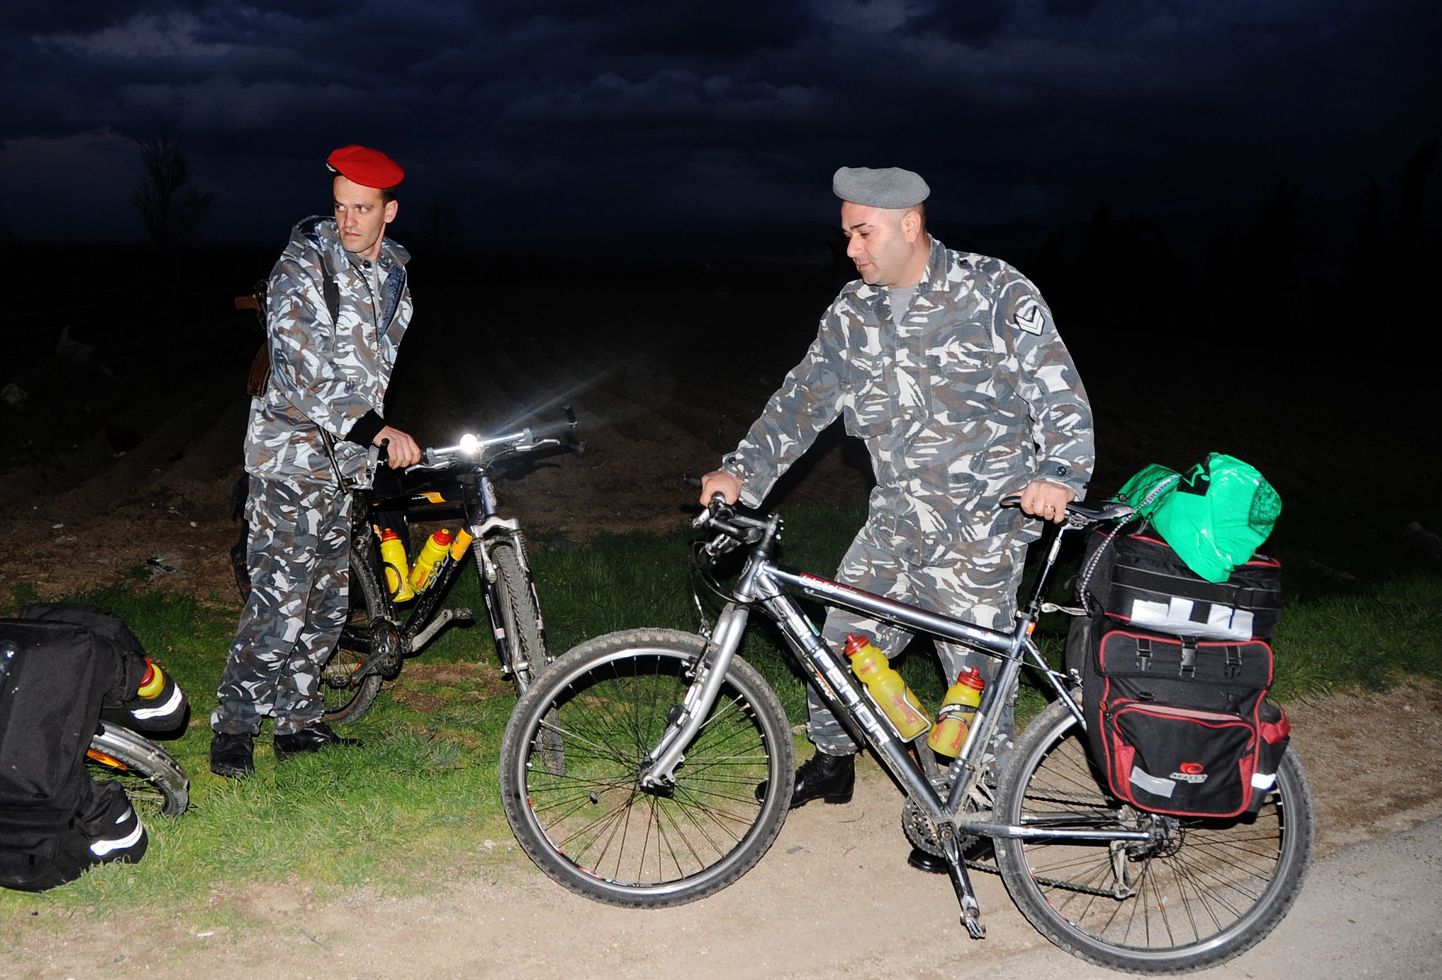 Liibanoni politseinikud eestlaste jalgratastega, mis leiti hüljatuna.